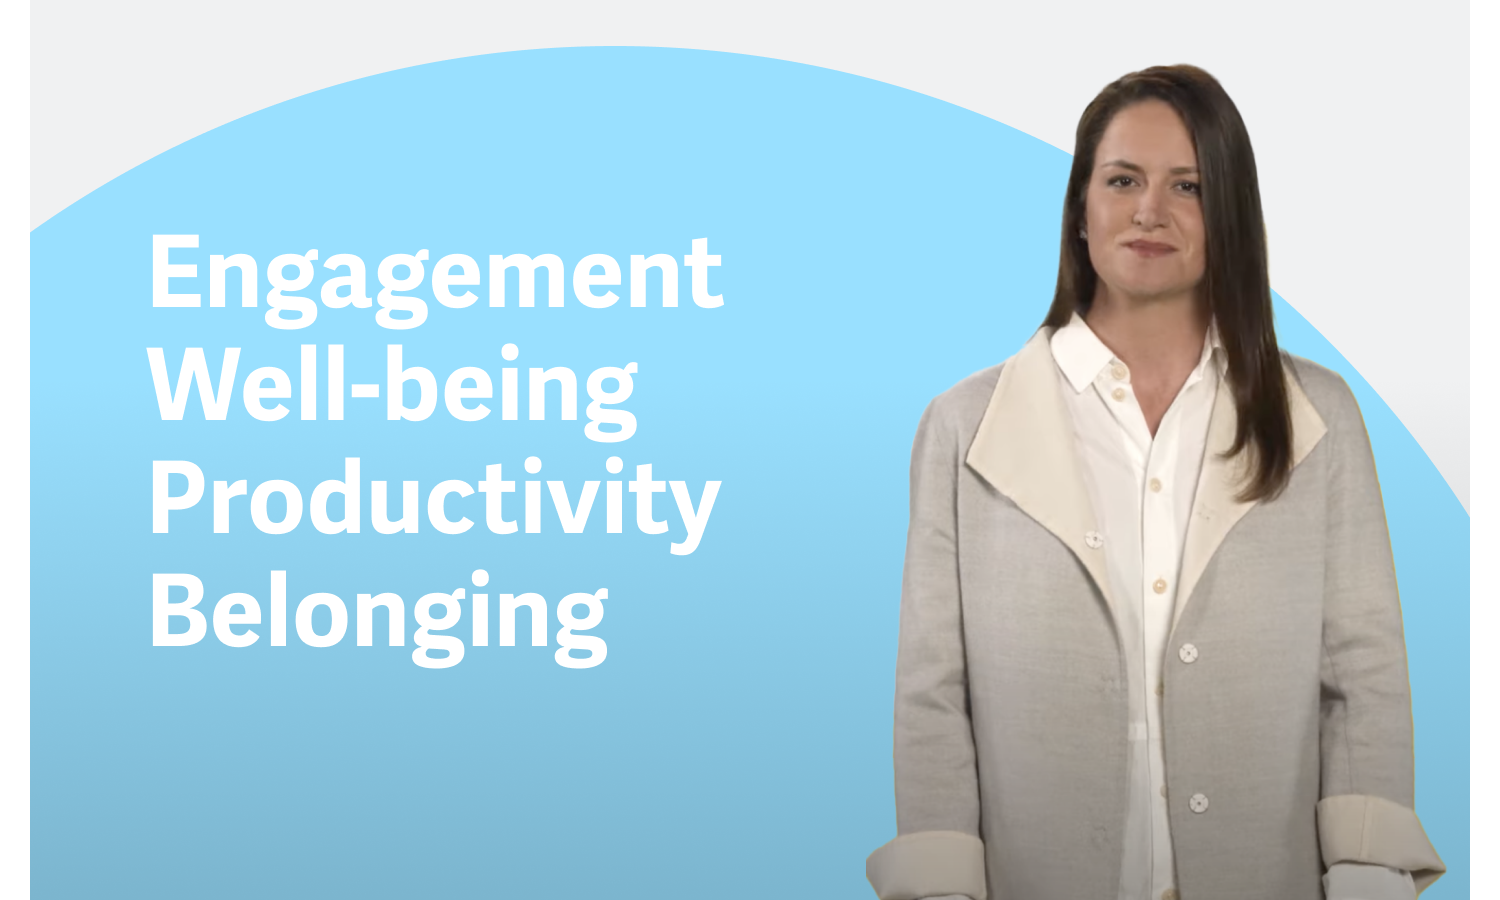 Vea el vídeo sobre la visión de Workday de la gestión de la experiencia del empleado.